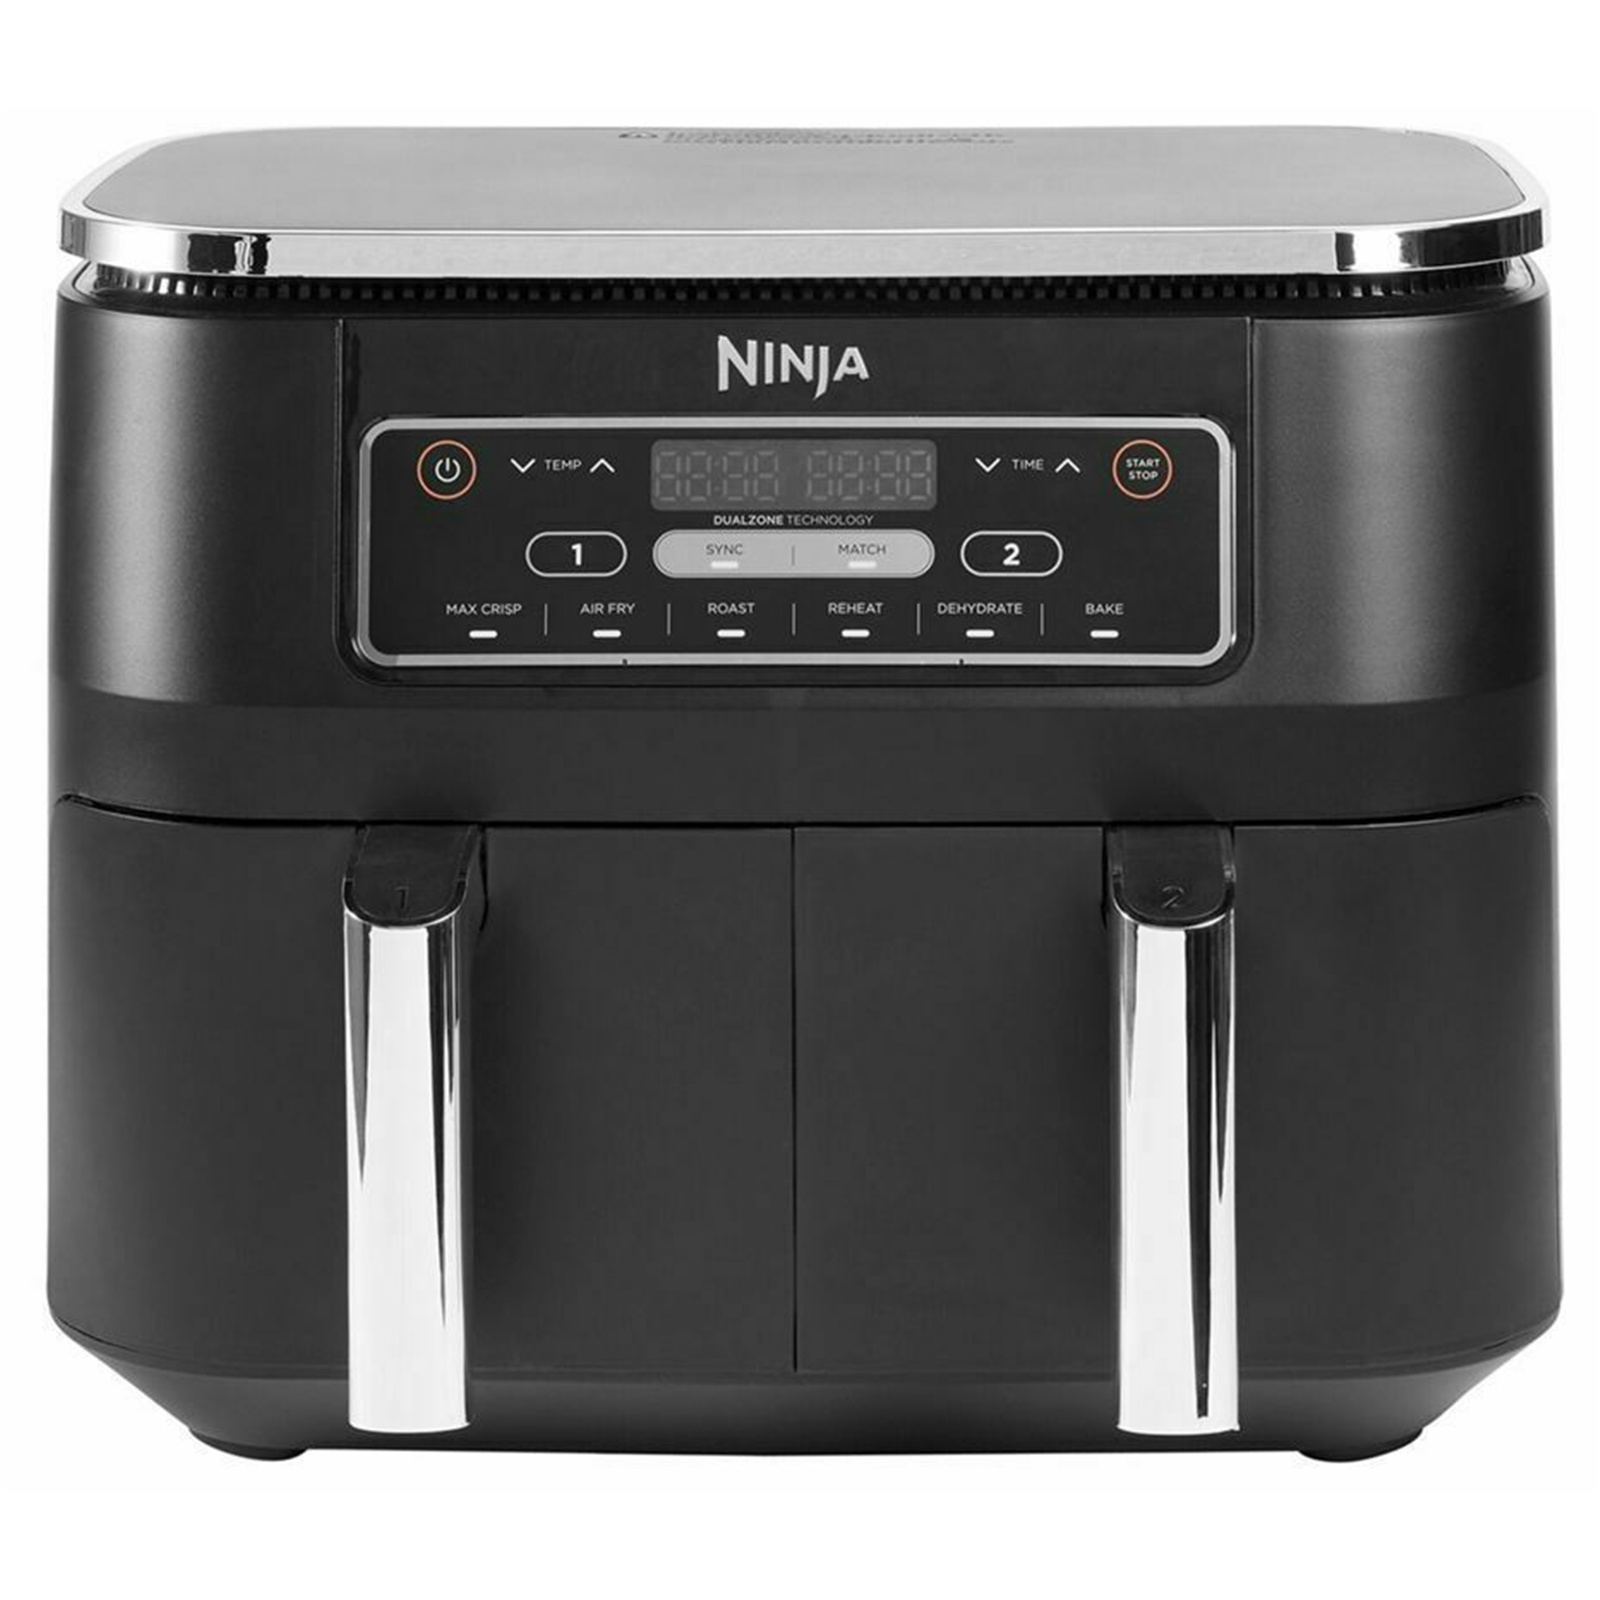 Buy the Ninja Foodi Af300 Dual Zone Air Fryer 7.6L Air Fryer - Max